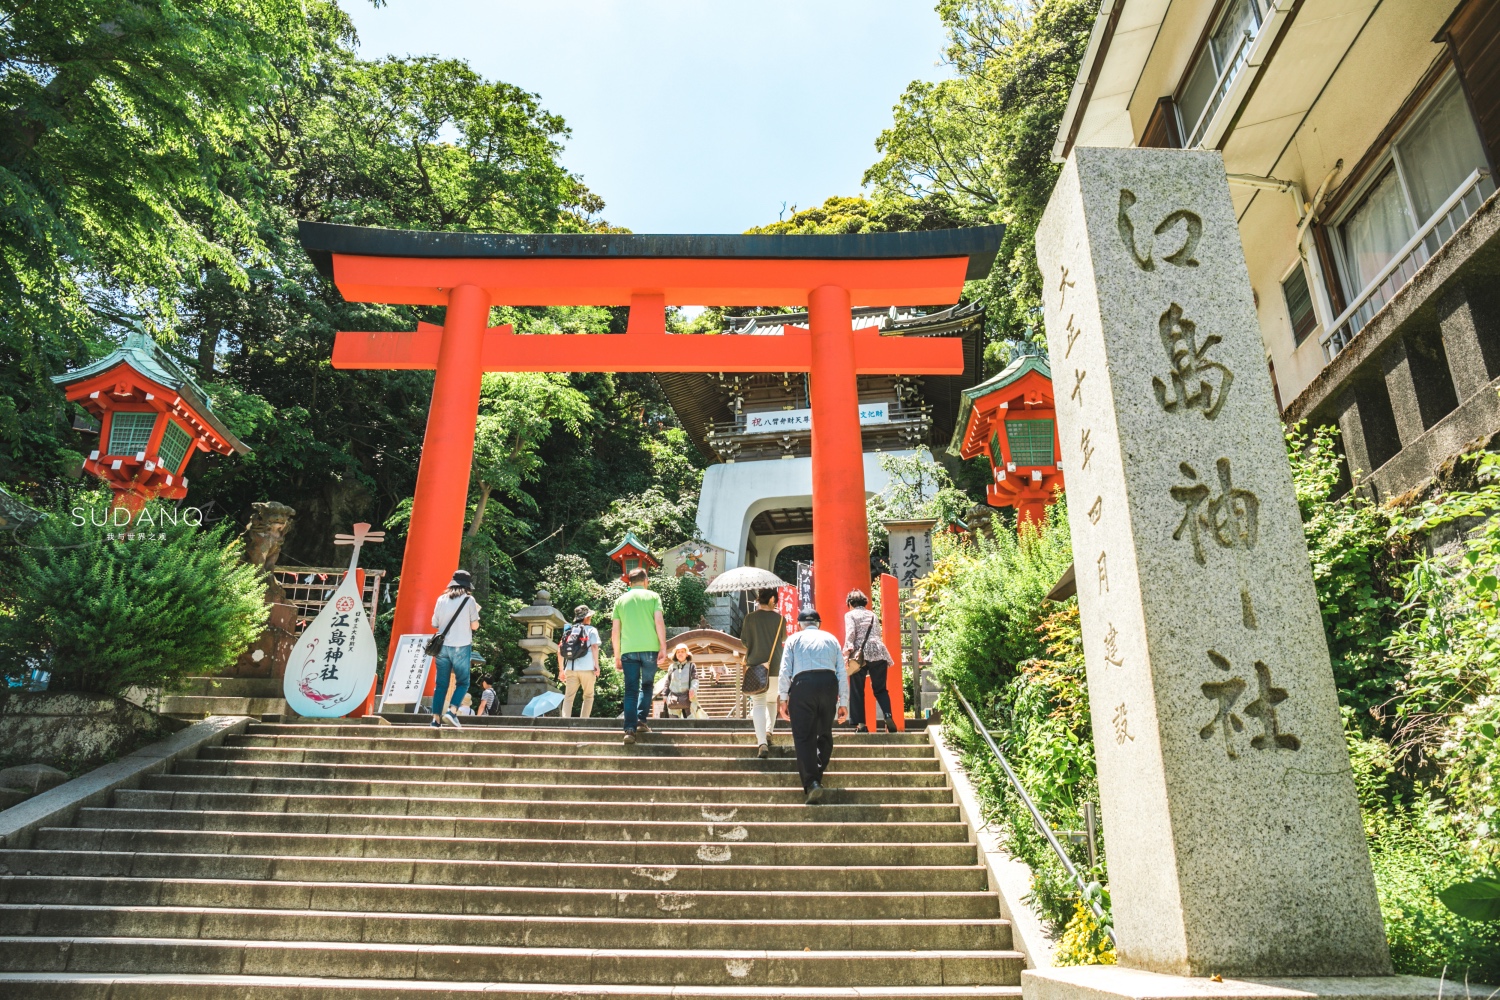 《灌篮高手》拍照圣地挤满游客，日本这座古城火了，强推江之岛